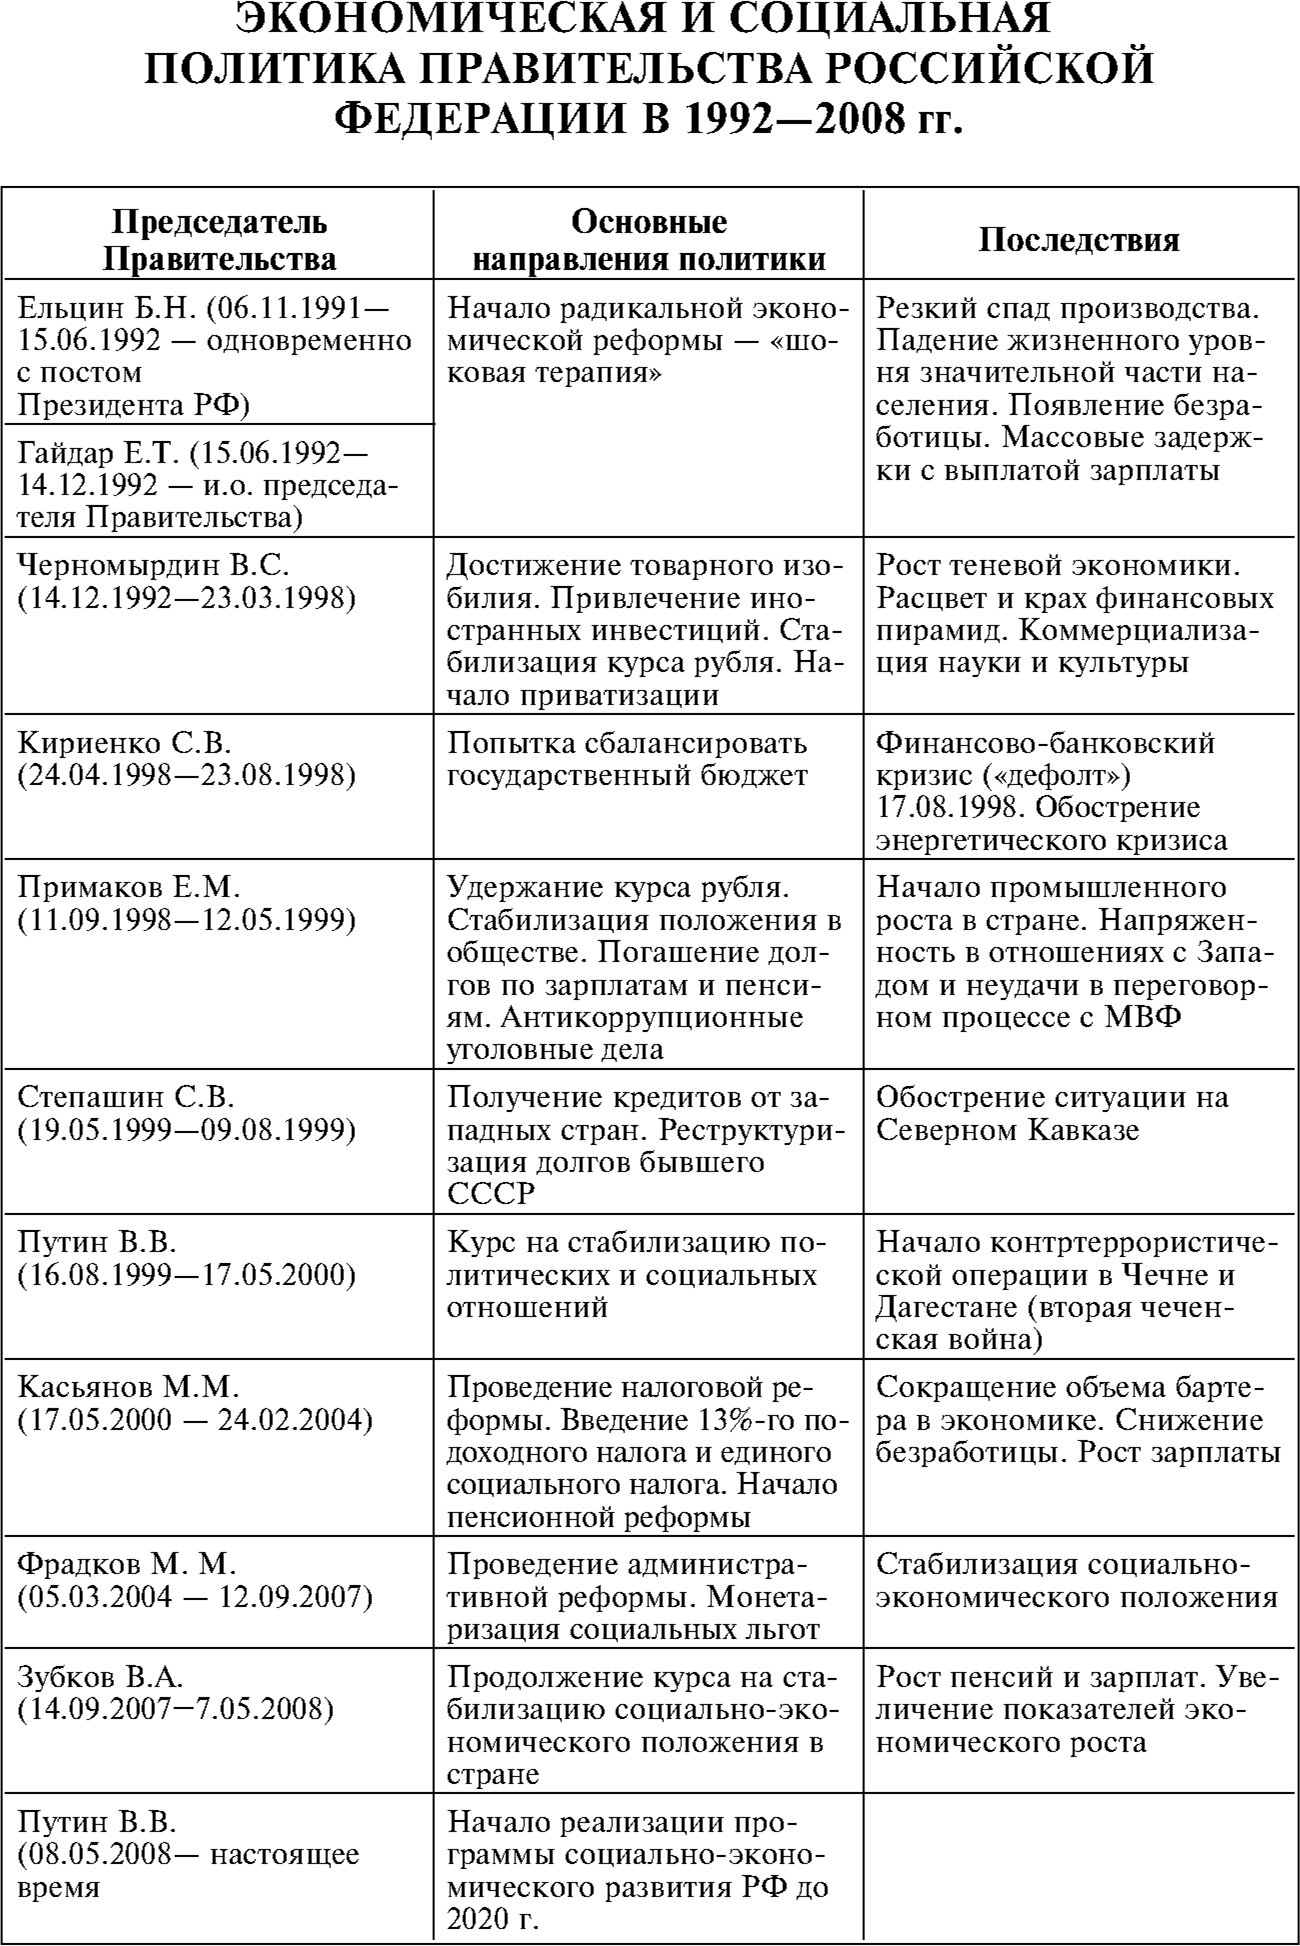 Экономическая и социальная политика правительства Российской Федерации в 1992-2008 гг.